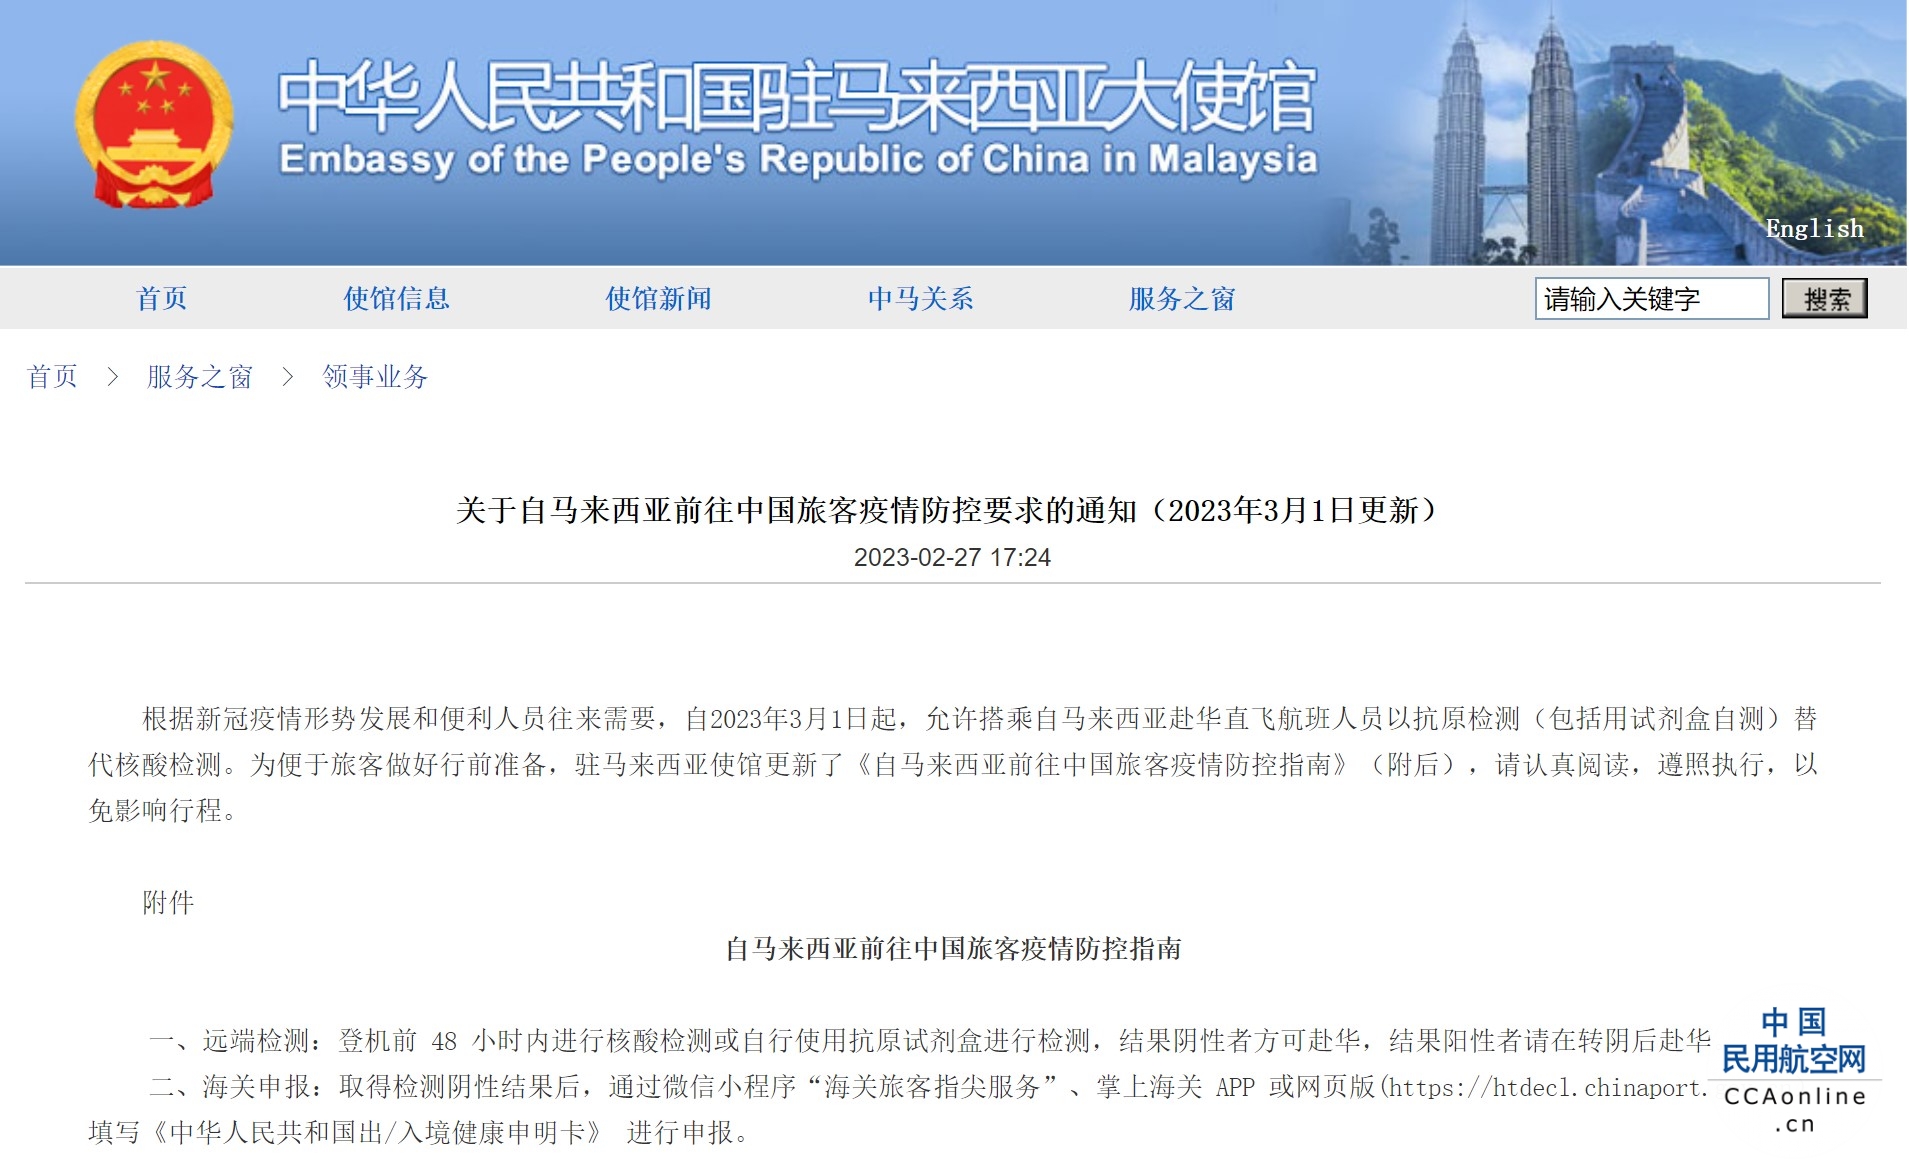 驻马来西亚大使馆发布前往中国旅客疫情防控要求的通知